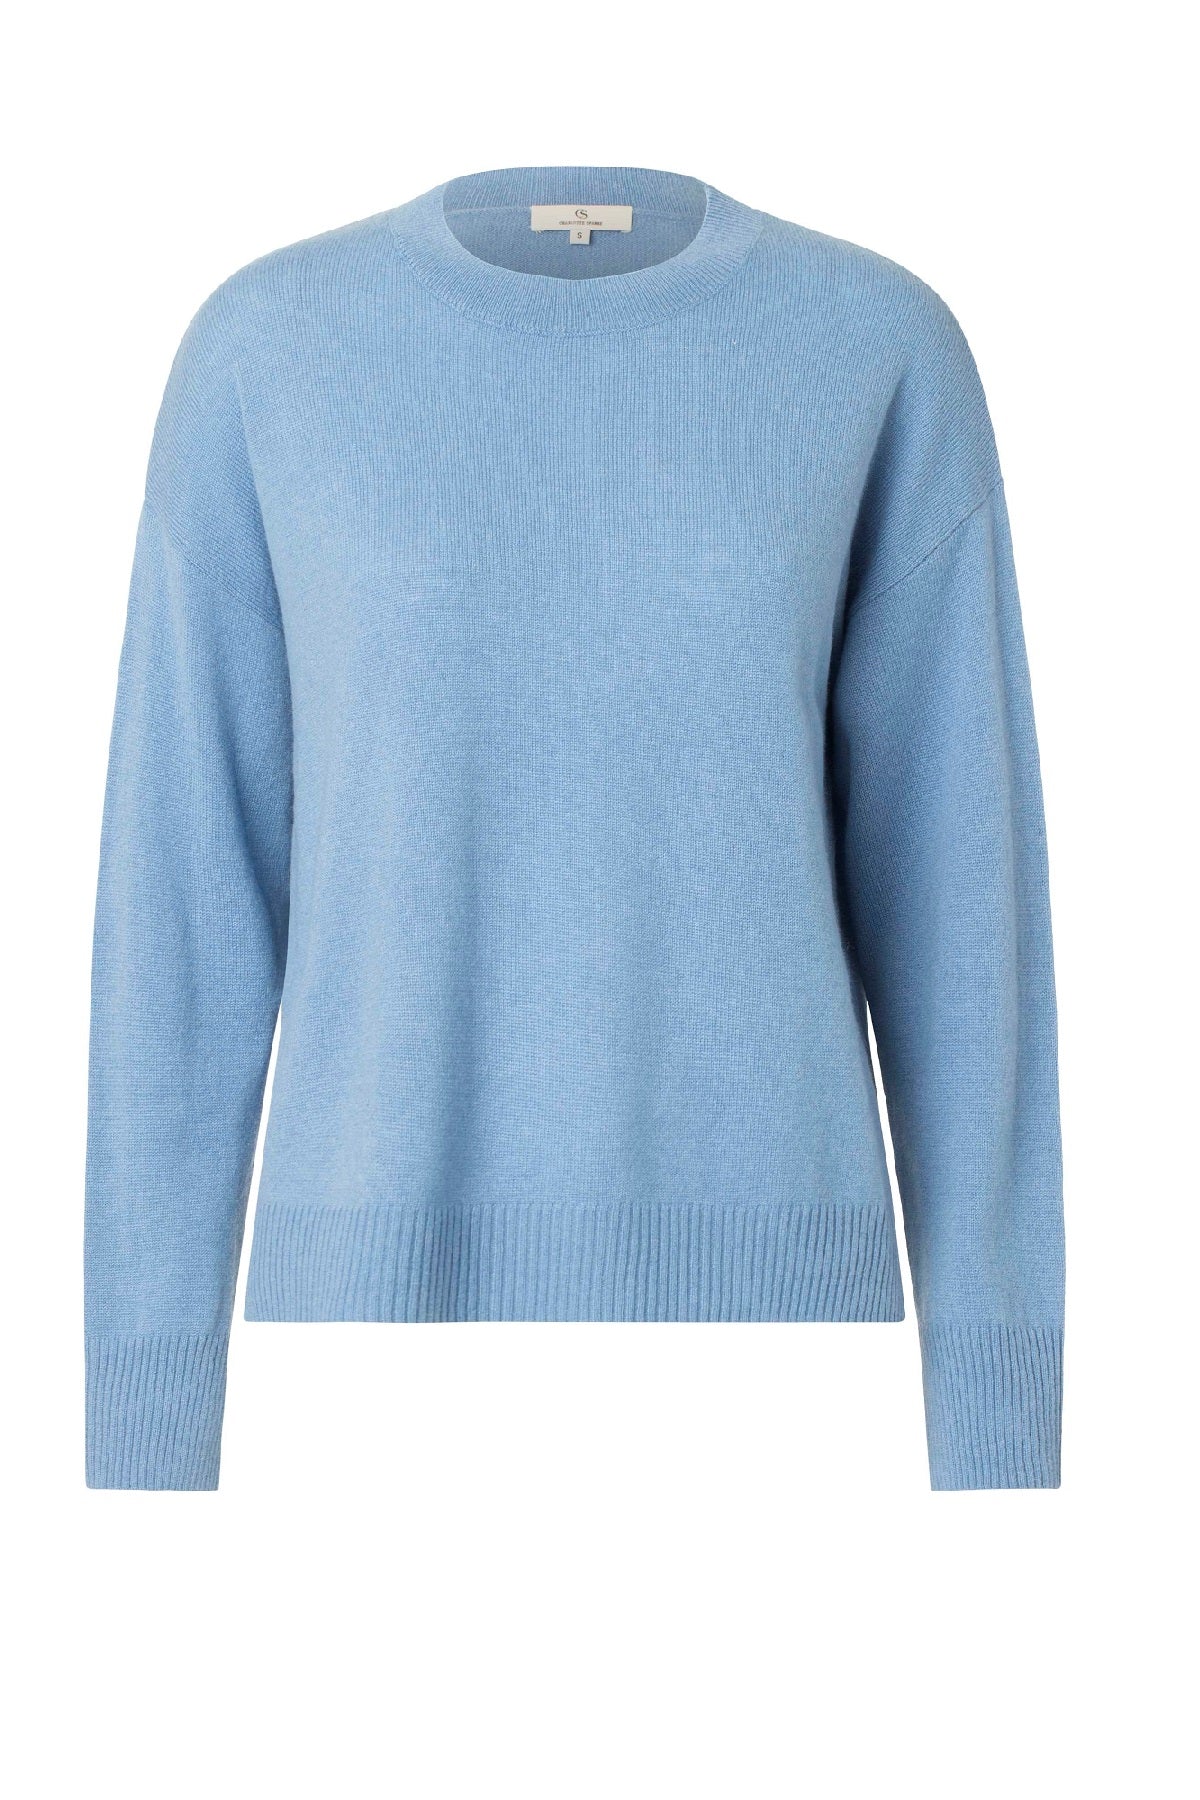 Charlotte Sparre 2656 Kashmir Sweater, Blue